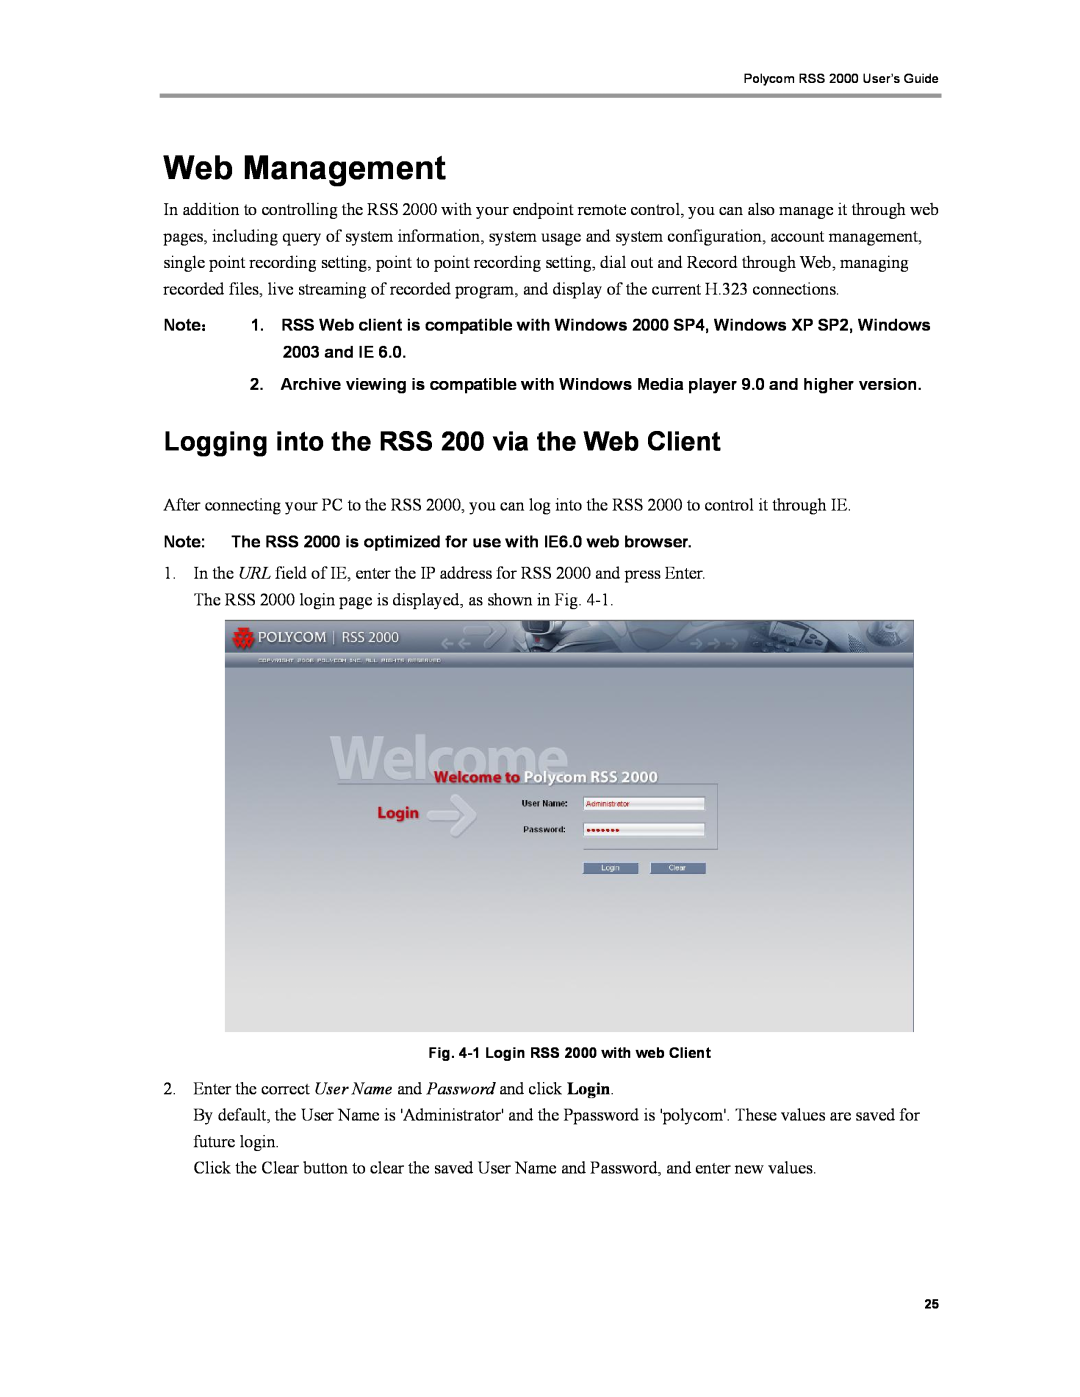 Polycom RSS 2000 manual Web Management, Logging into the RSS 200 via the Web Client 